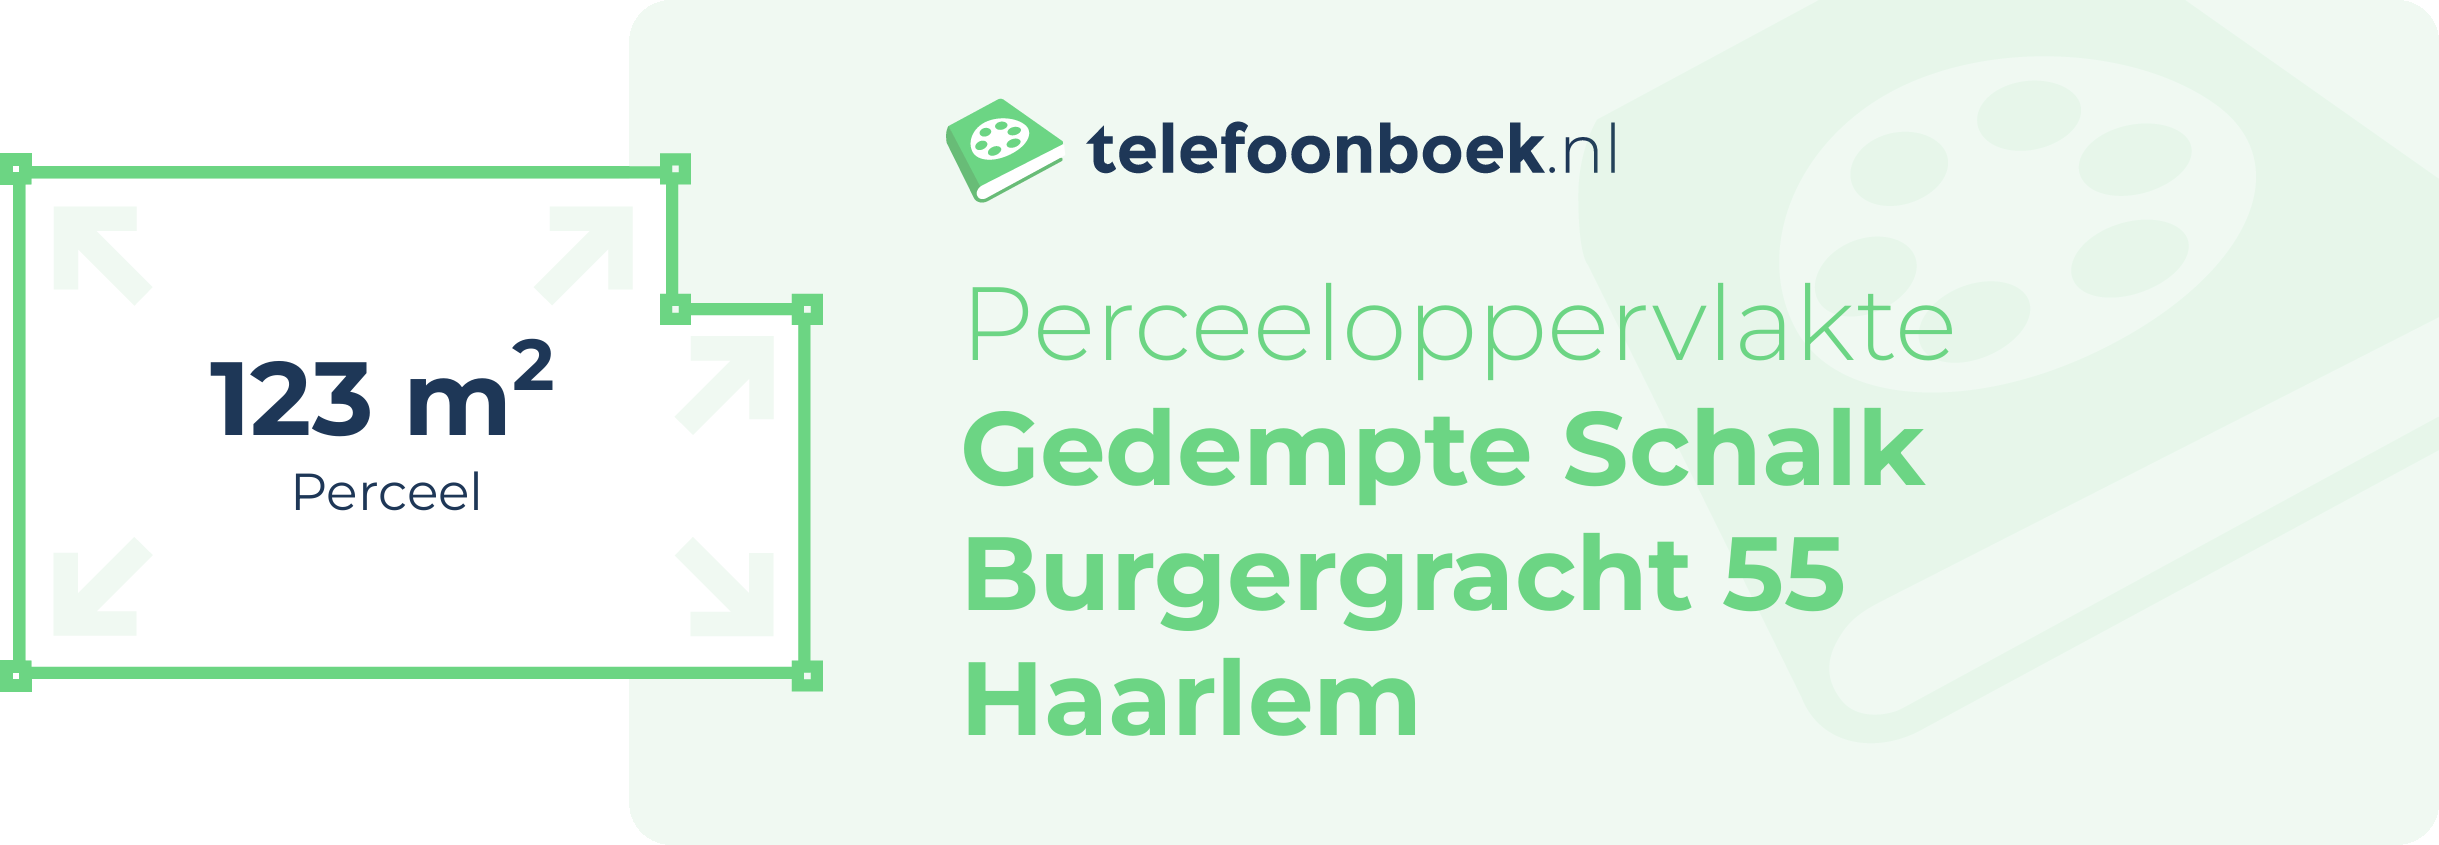 Perceeloppervlakte Gedempte Schalk Burgergracht 55 Haarlem